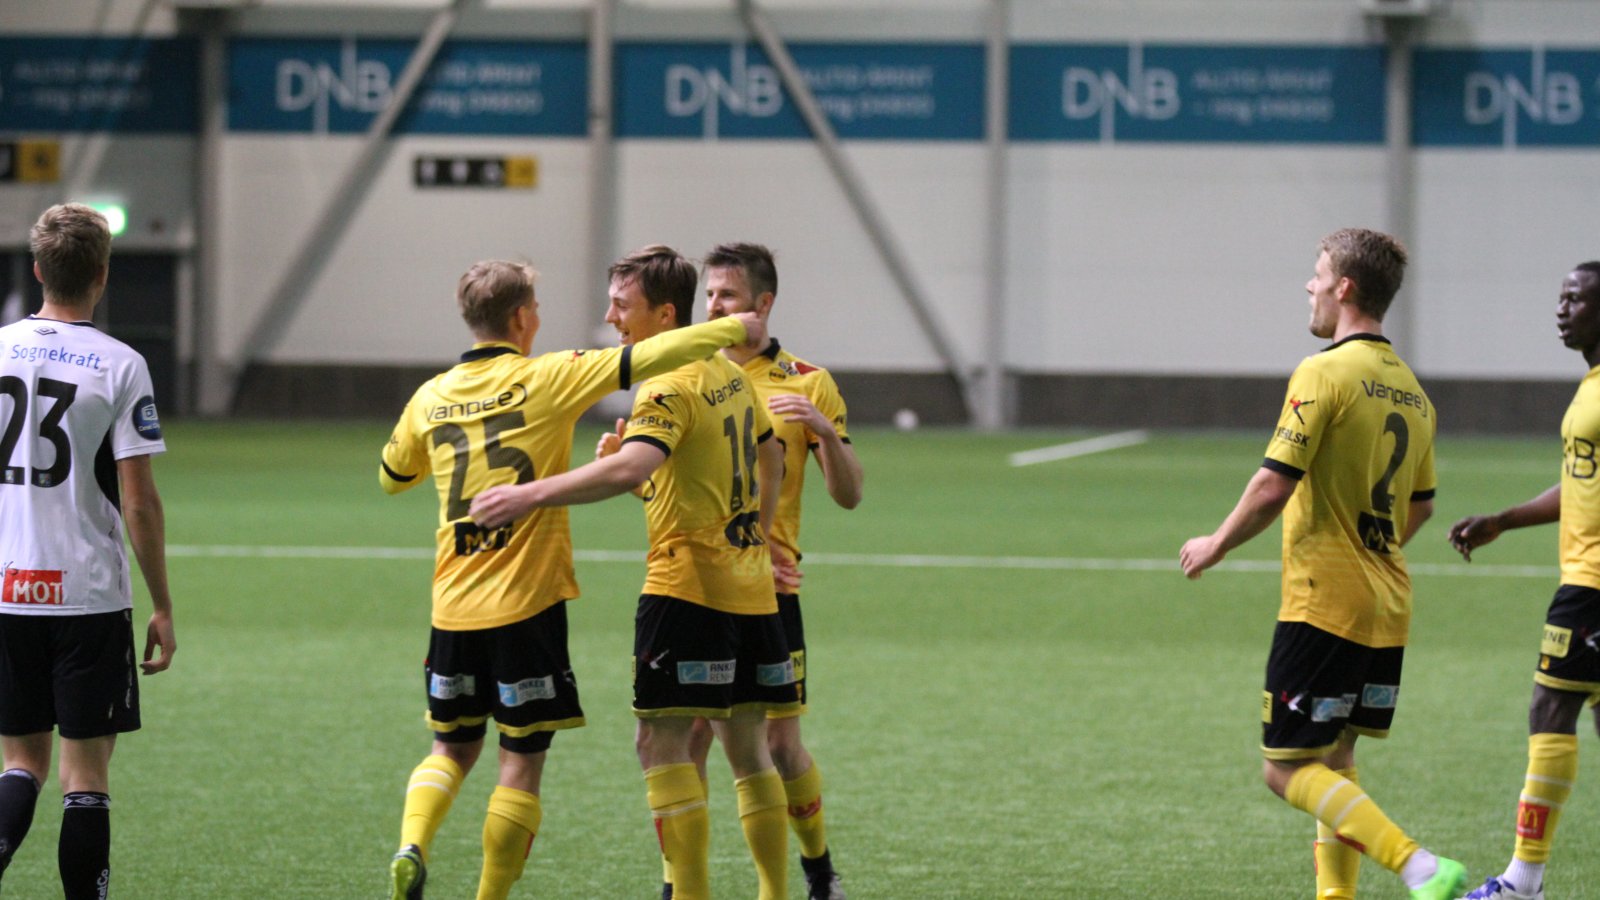 Tobias Gran jubler etter å ha scoret mot Sogndal